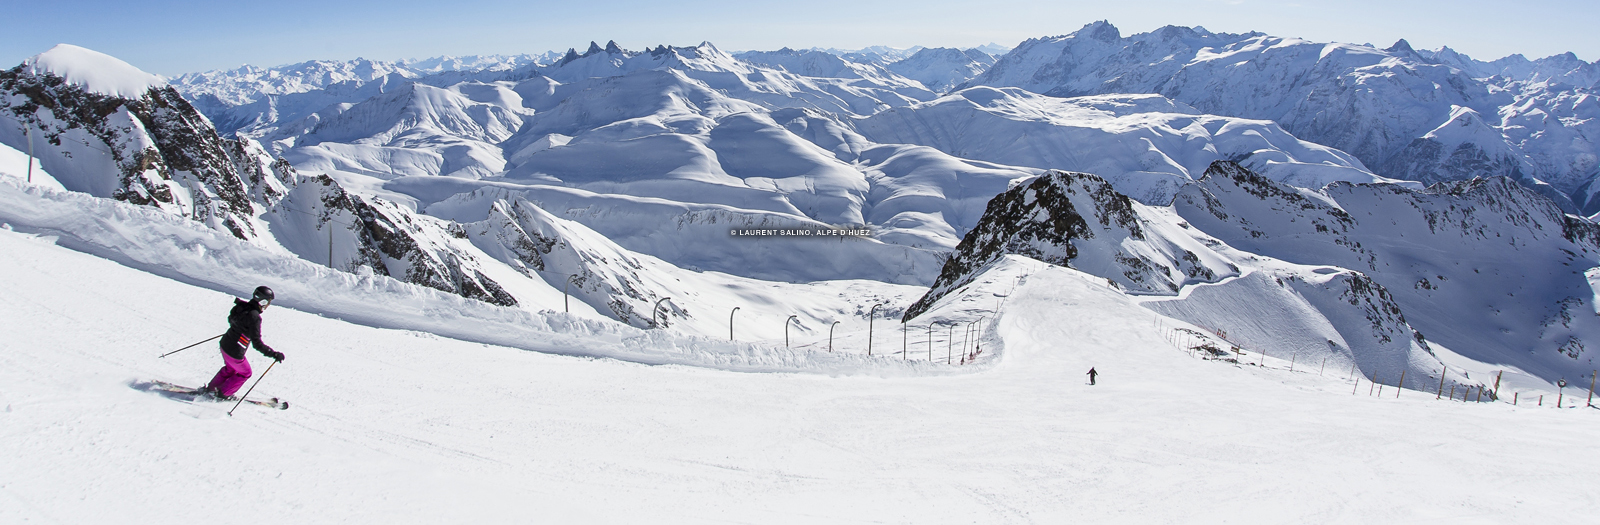 Alpe d'Huez ski resort